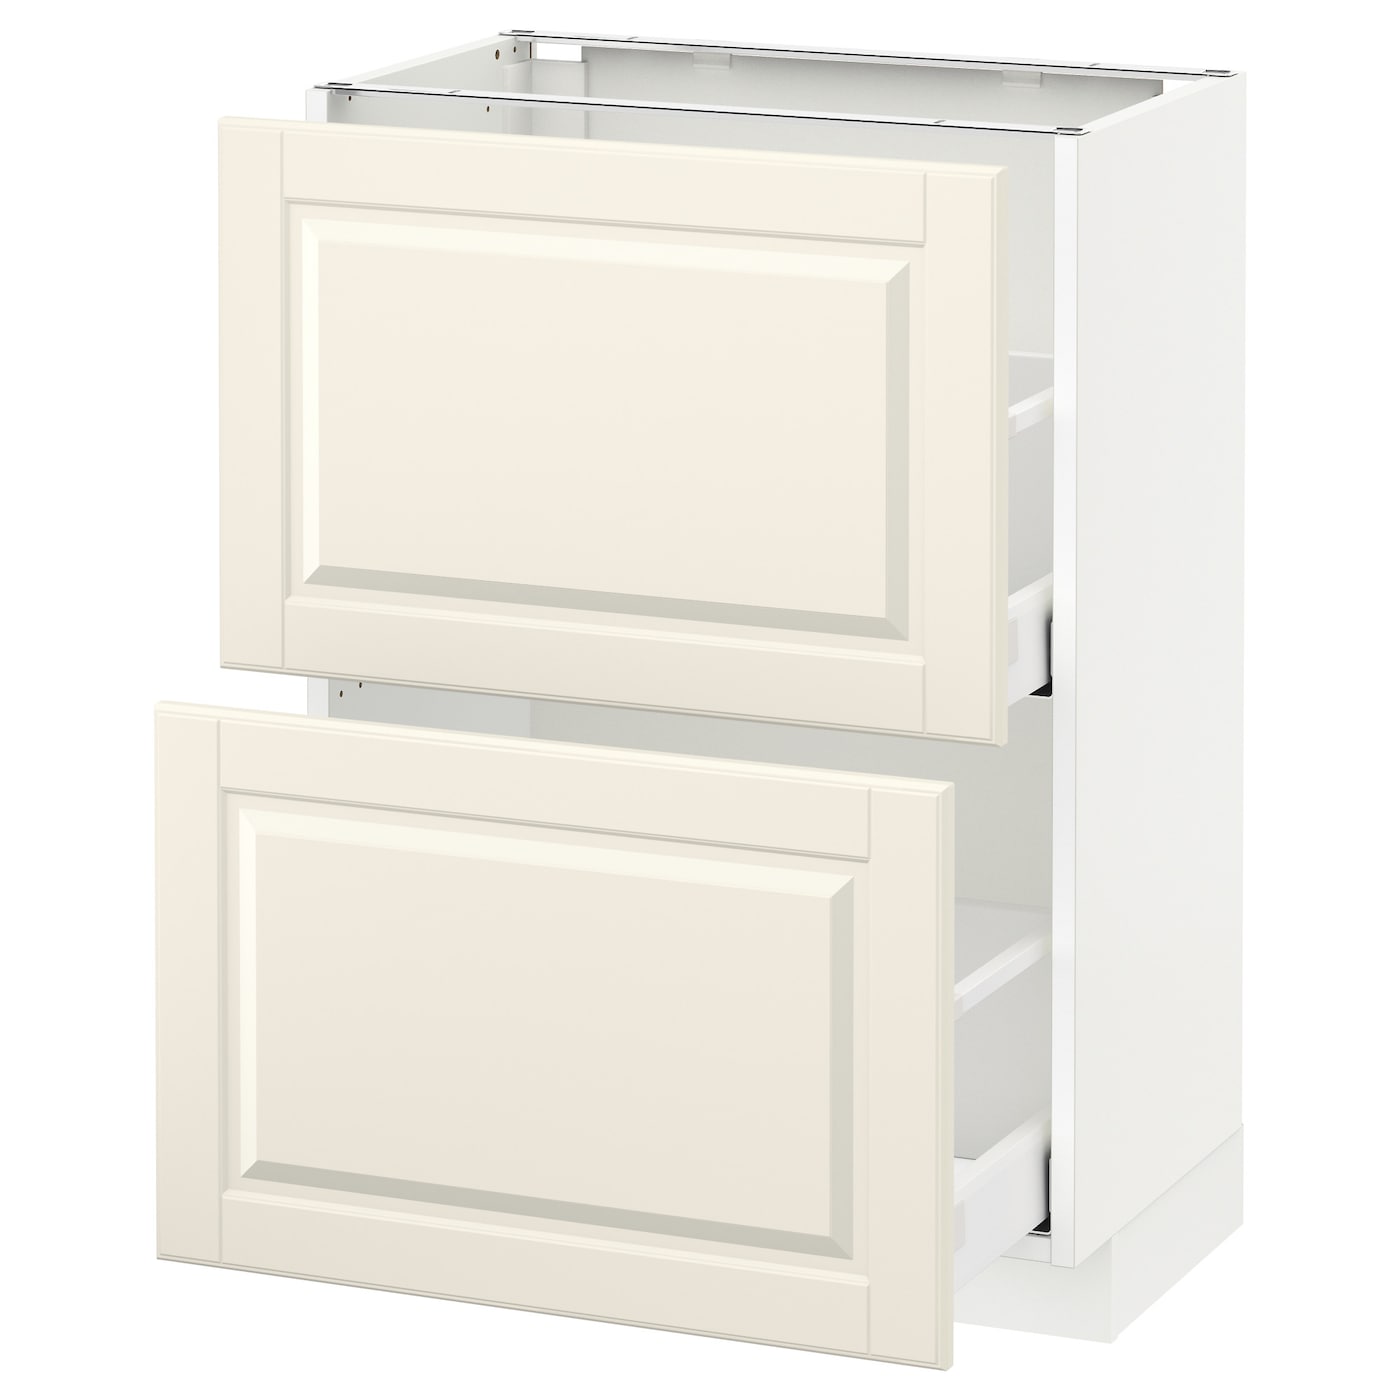 Напольный кухонный шкаф  - IKEA METOD MAXIMERA, 88x39,5x60см, белый/светло-бежевый, МЕТОД МАКСИМЕРА ИКЕА